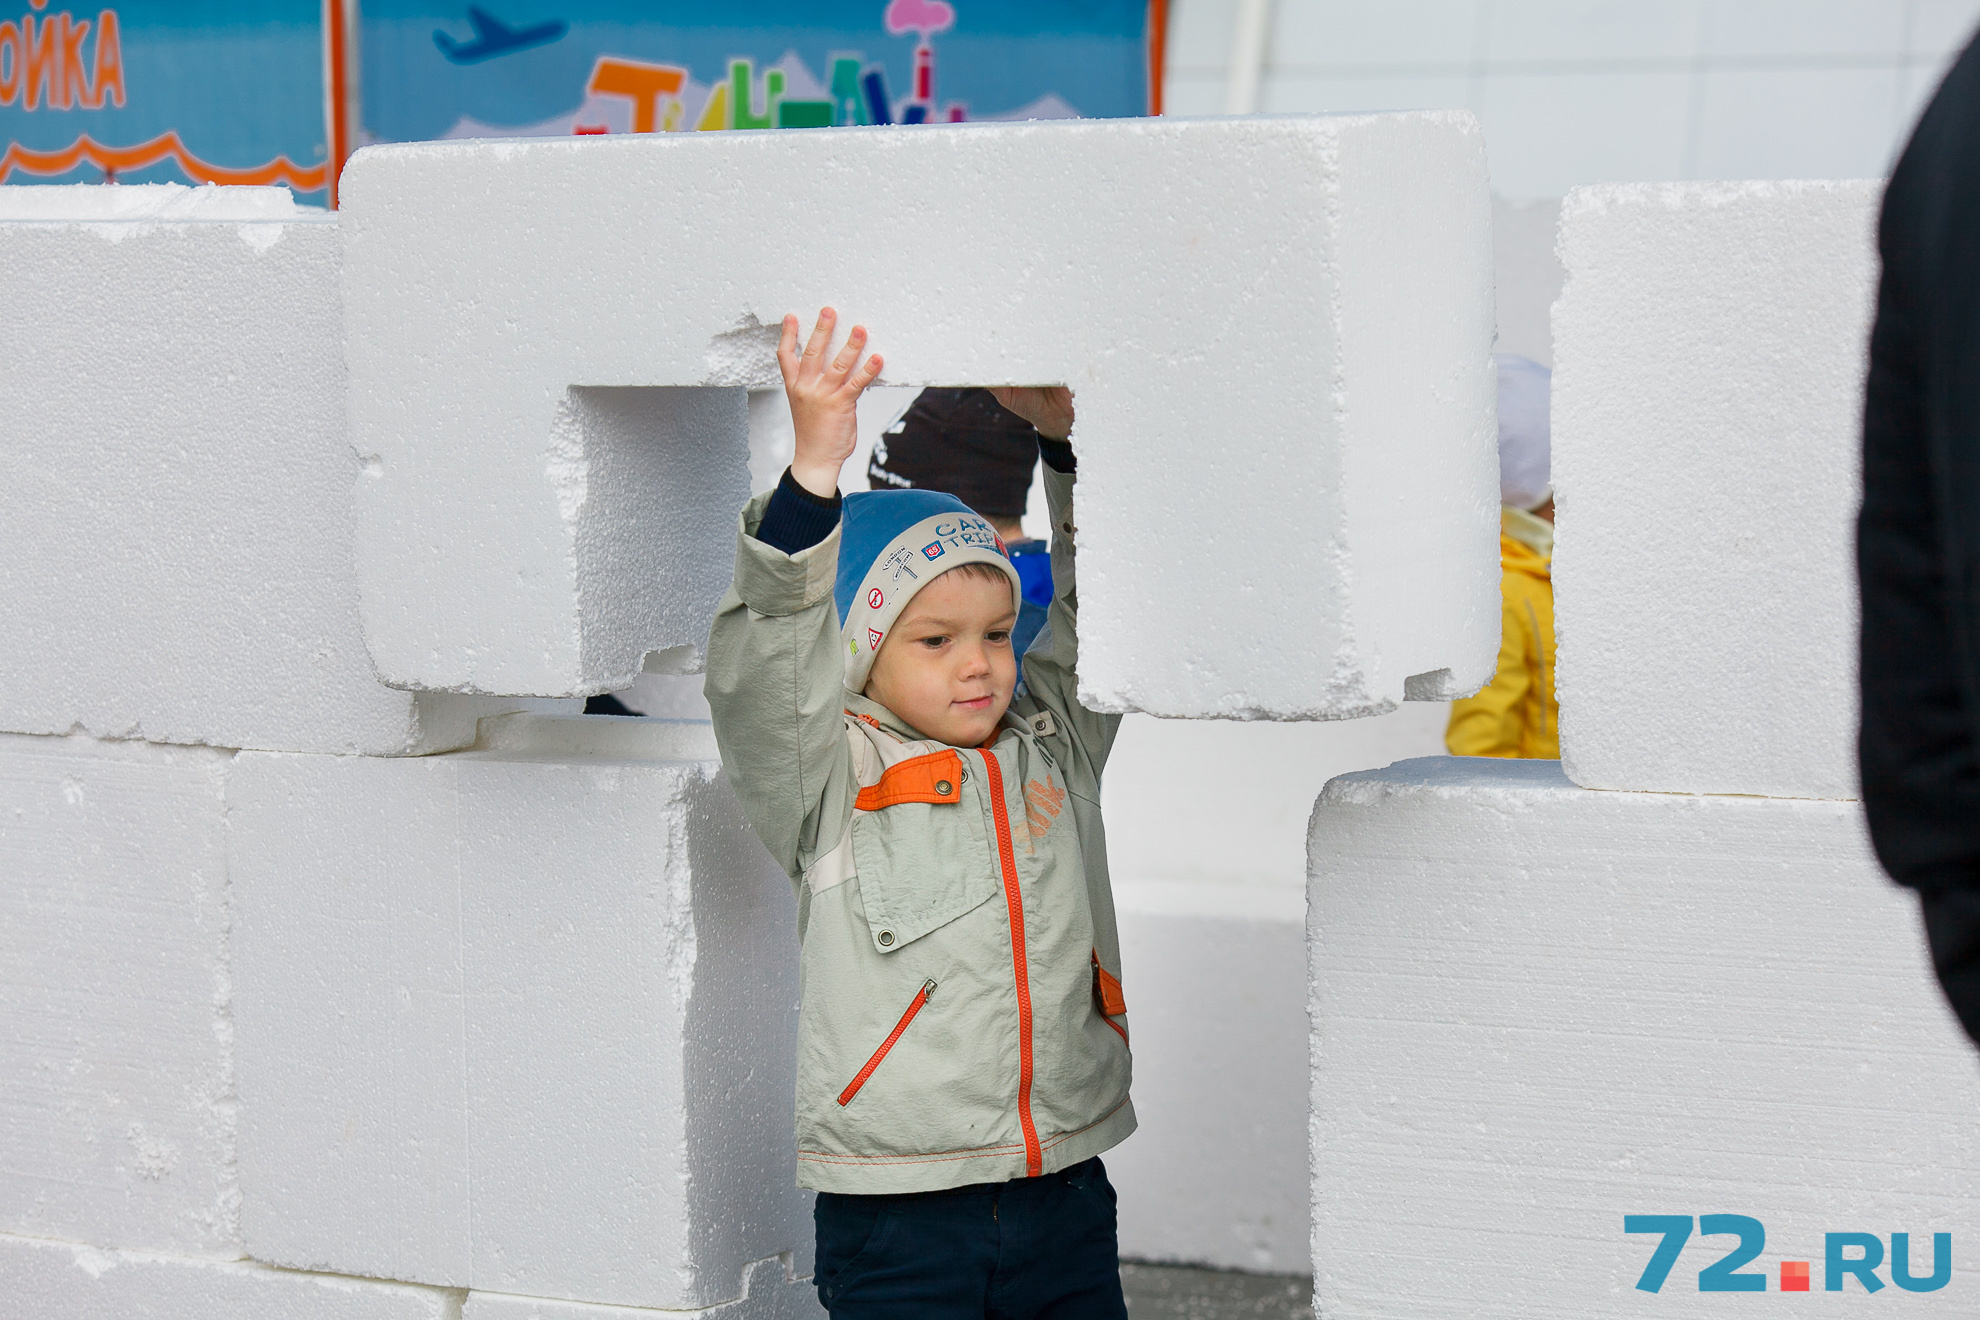 Детки с удовольствием принимали участие в интерактивных играх: строили замки из конструктора, собирали огромные пазлы и многое другое